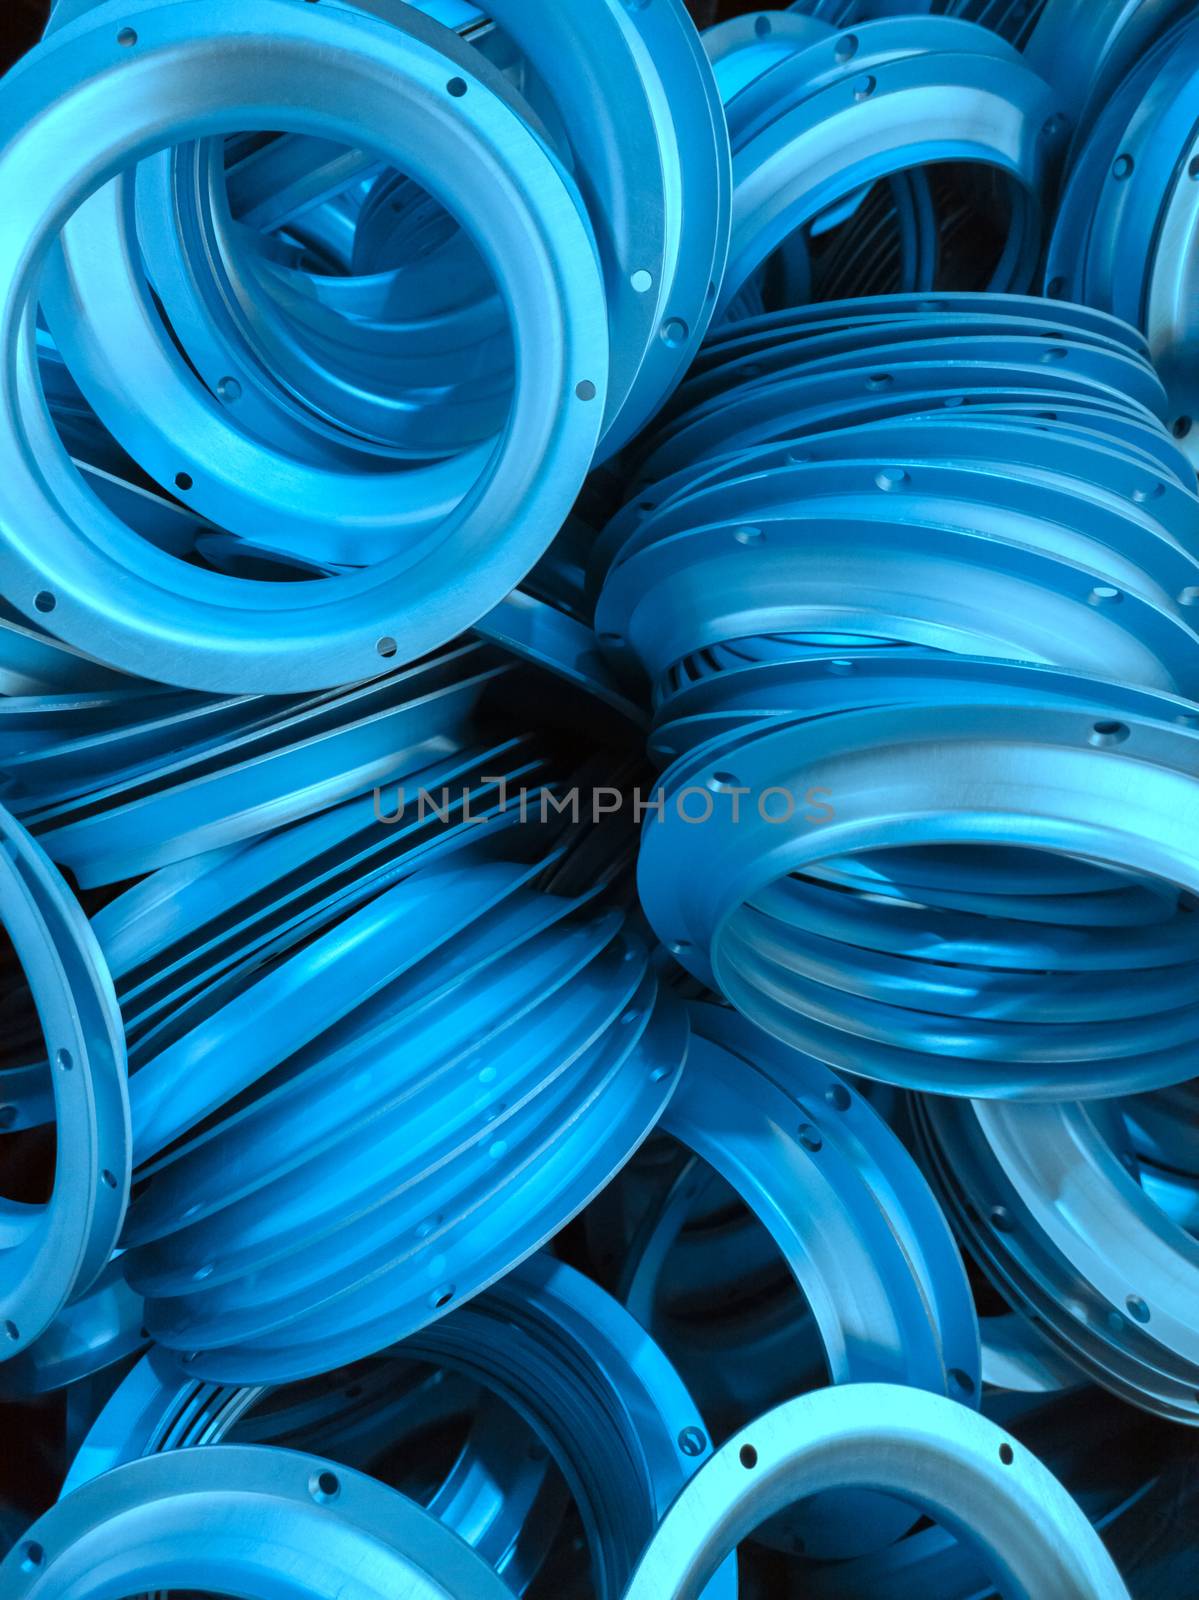 a batch of phantom blue colored anodized aluminium parts.